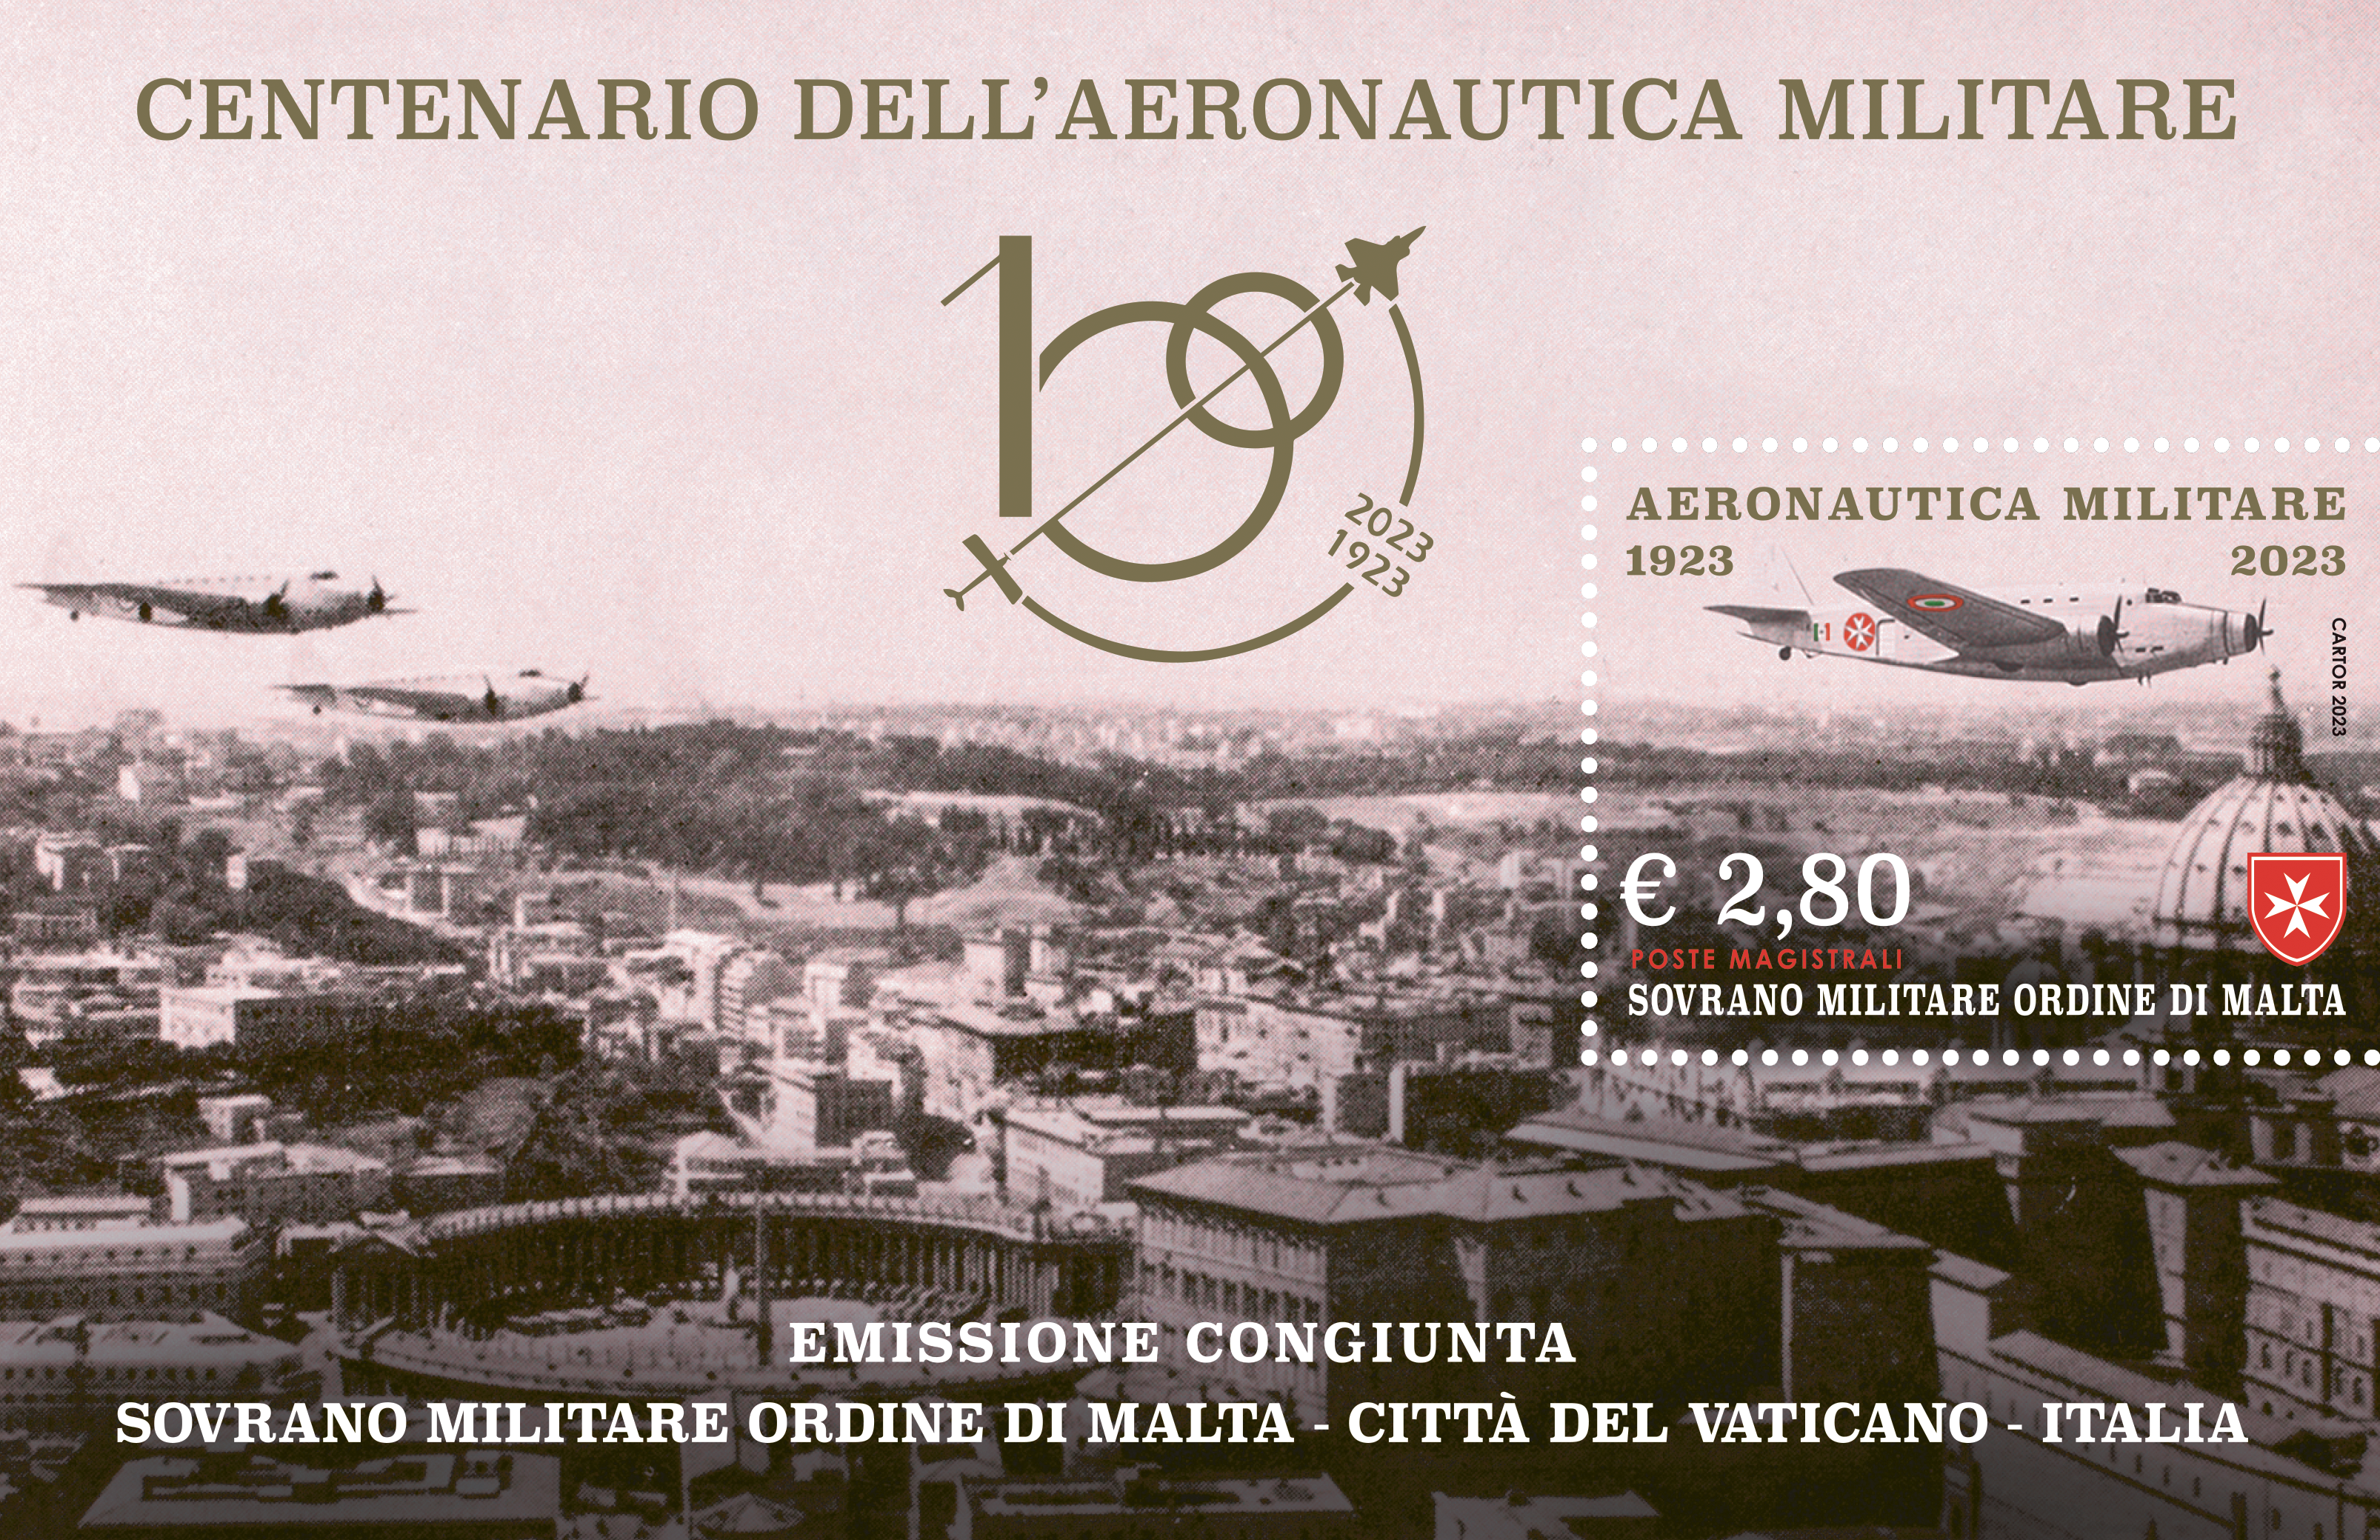 Cerimonia di emissione filatelica congiunta con l’Aeronautica Militare Italiana